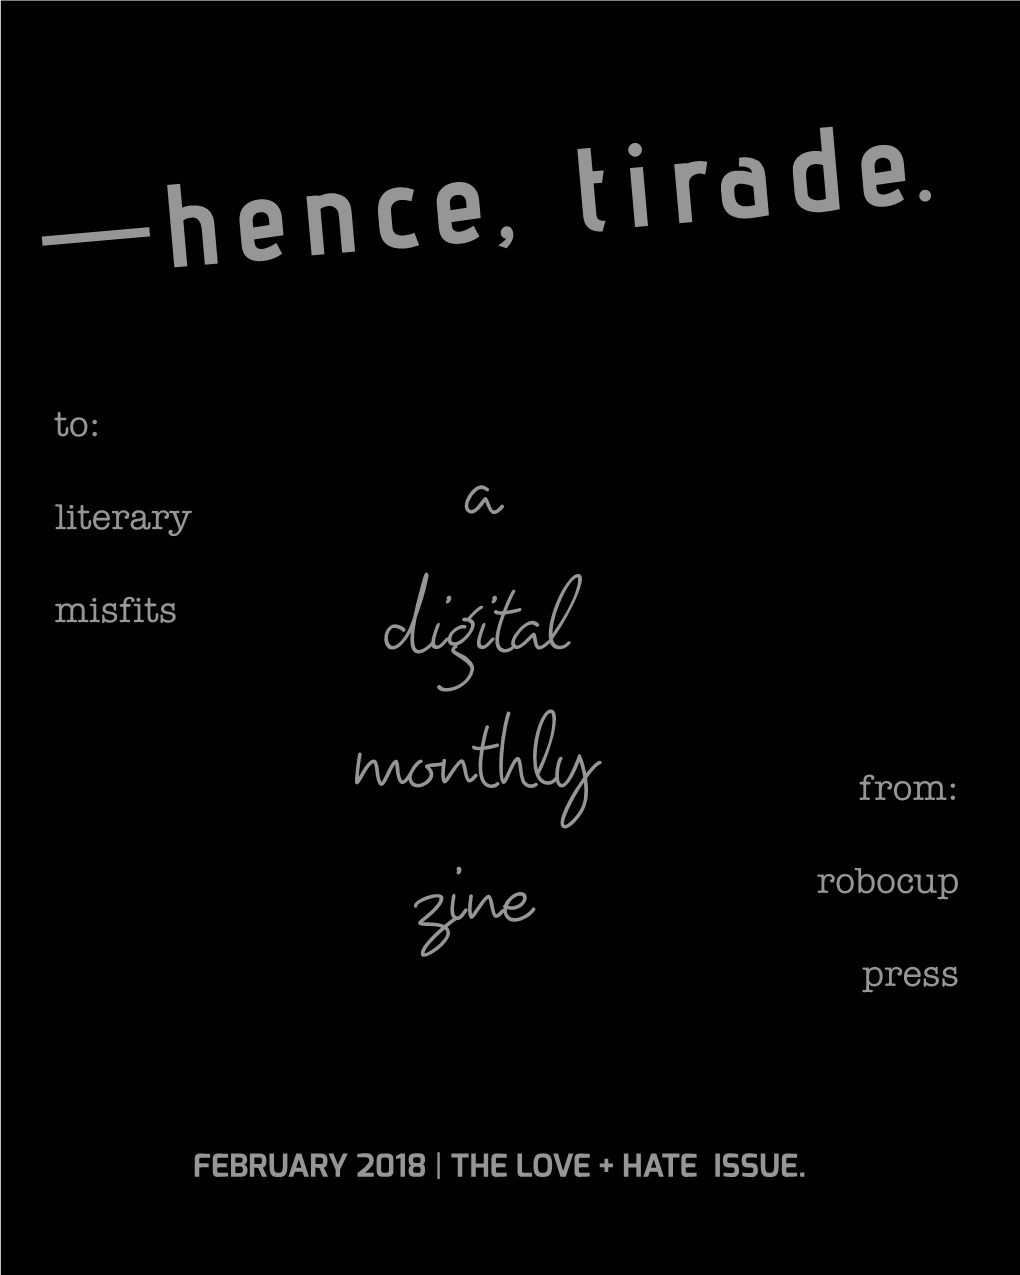 —Hence, Tirade